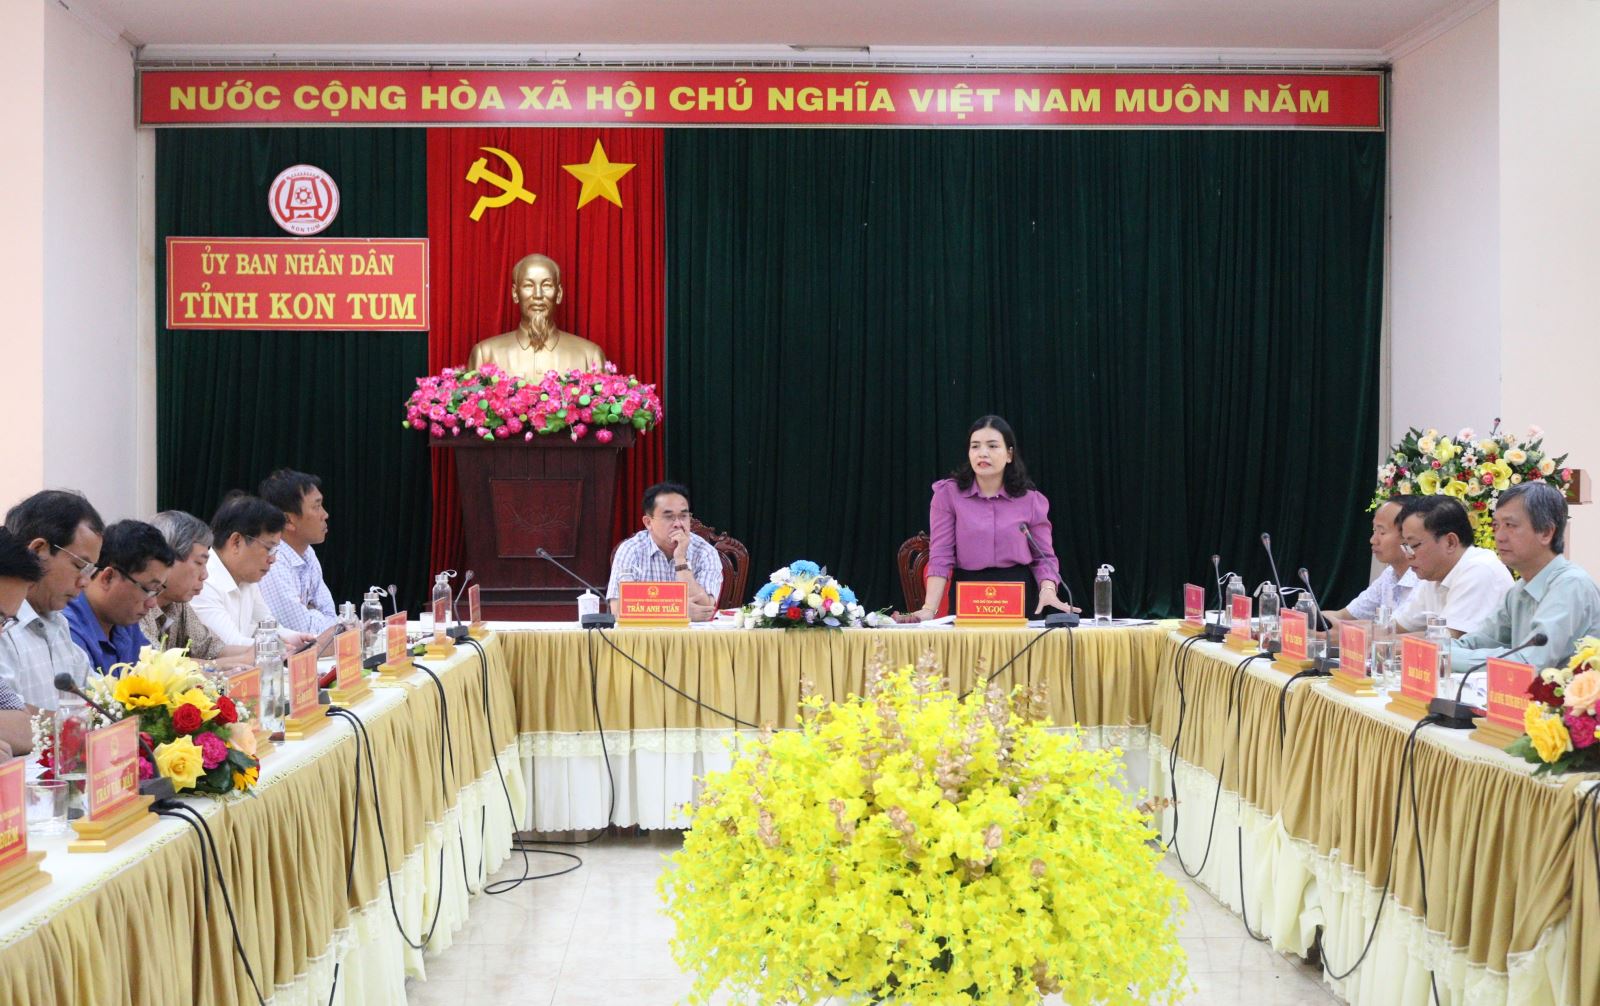 Phó Chủ tịch UBND tỉnh Kon Tm Y Ngọc phát biểu tại buổi làm việc